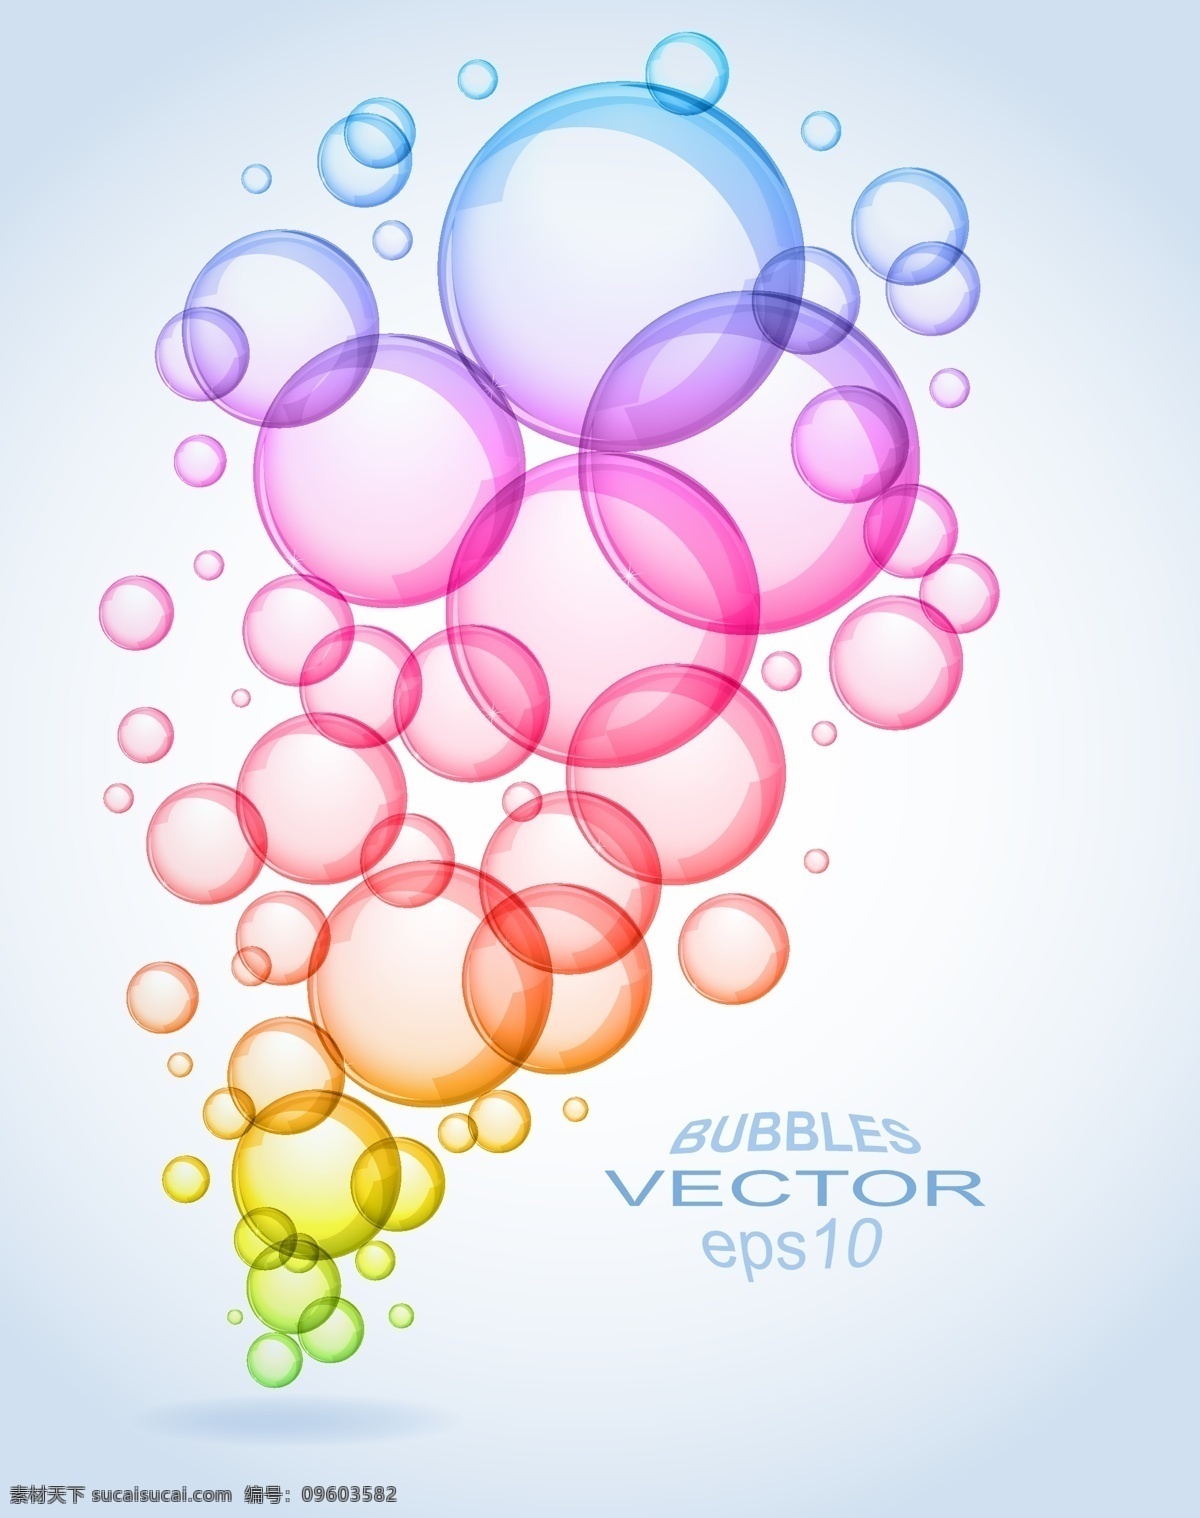 多彩气泡 气泡 多彩 气球 多彩气球 彩绘 喷绘 炫彩 靓丽 背景 小清新 多彩背景 创意 创意素材 彩球 炫彩背景 清新 科技素材